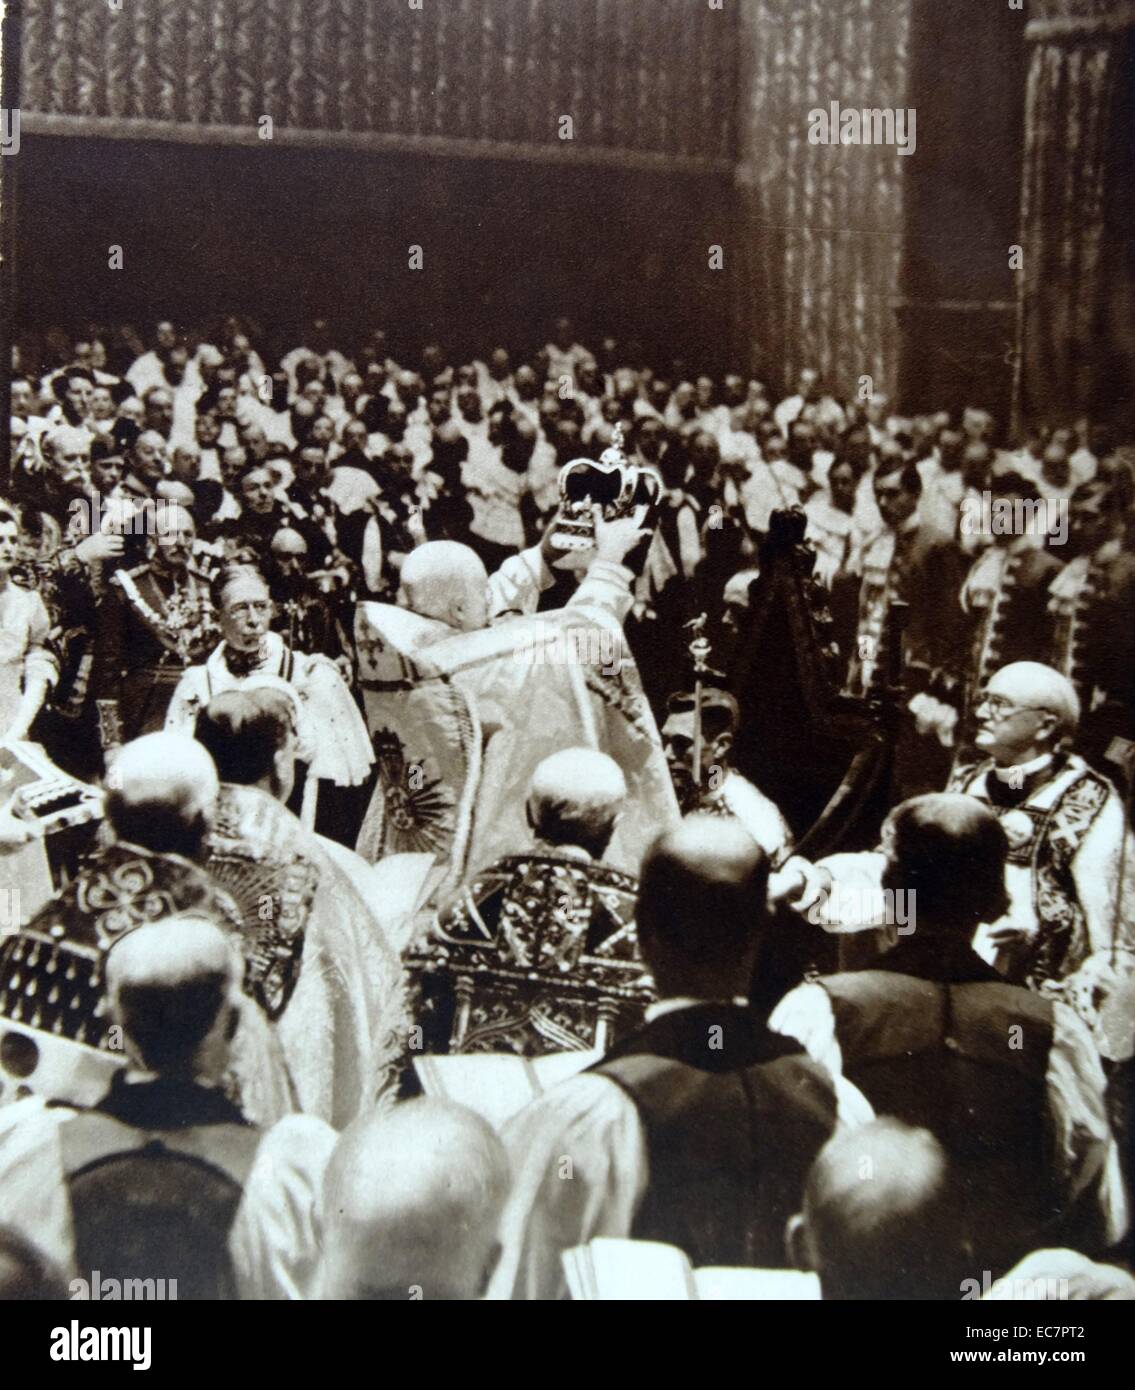 Couronnement du roi britannique George VI à l'abbaye de Westminster. George VI (Albert Frederick Arthur George ; 14 Décembre 1895 - 6 février 1952) Roi du Royaume-Uni et des Dominions du Commonwealth britannique à partir du 11 décembre 1936 jusqu'à sa mort. Il fut le dernier empereur de l'Inde et le premier chef du Commonwealth Banque D'Images